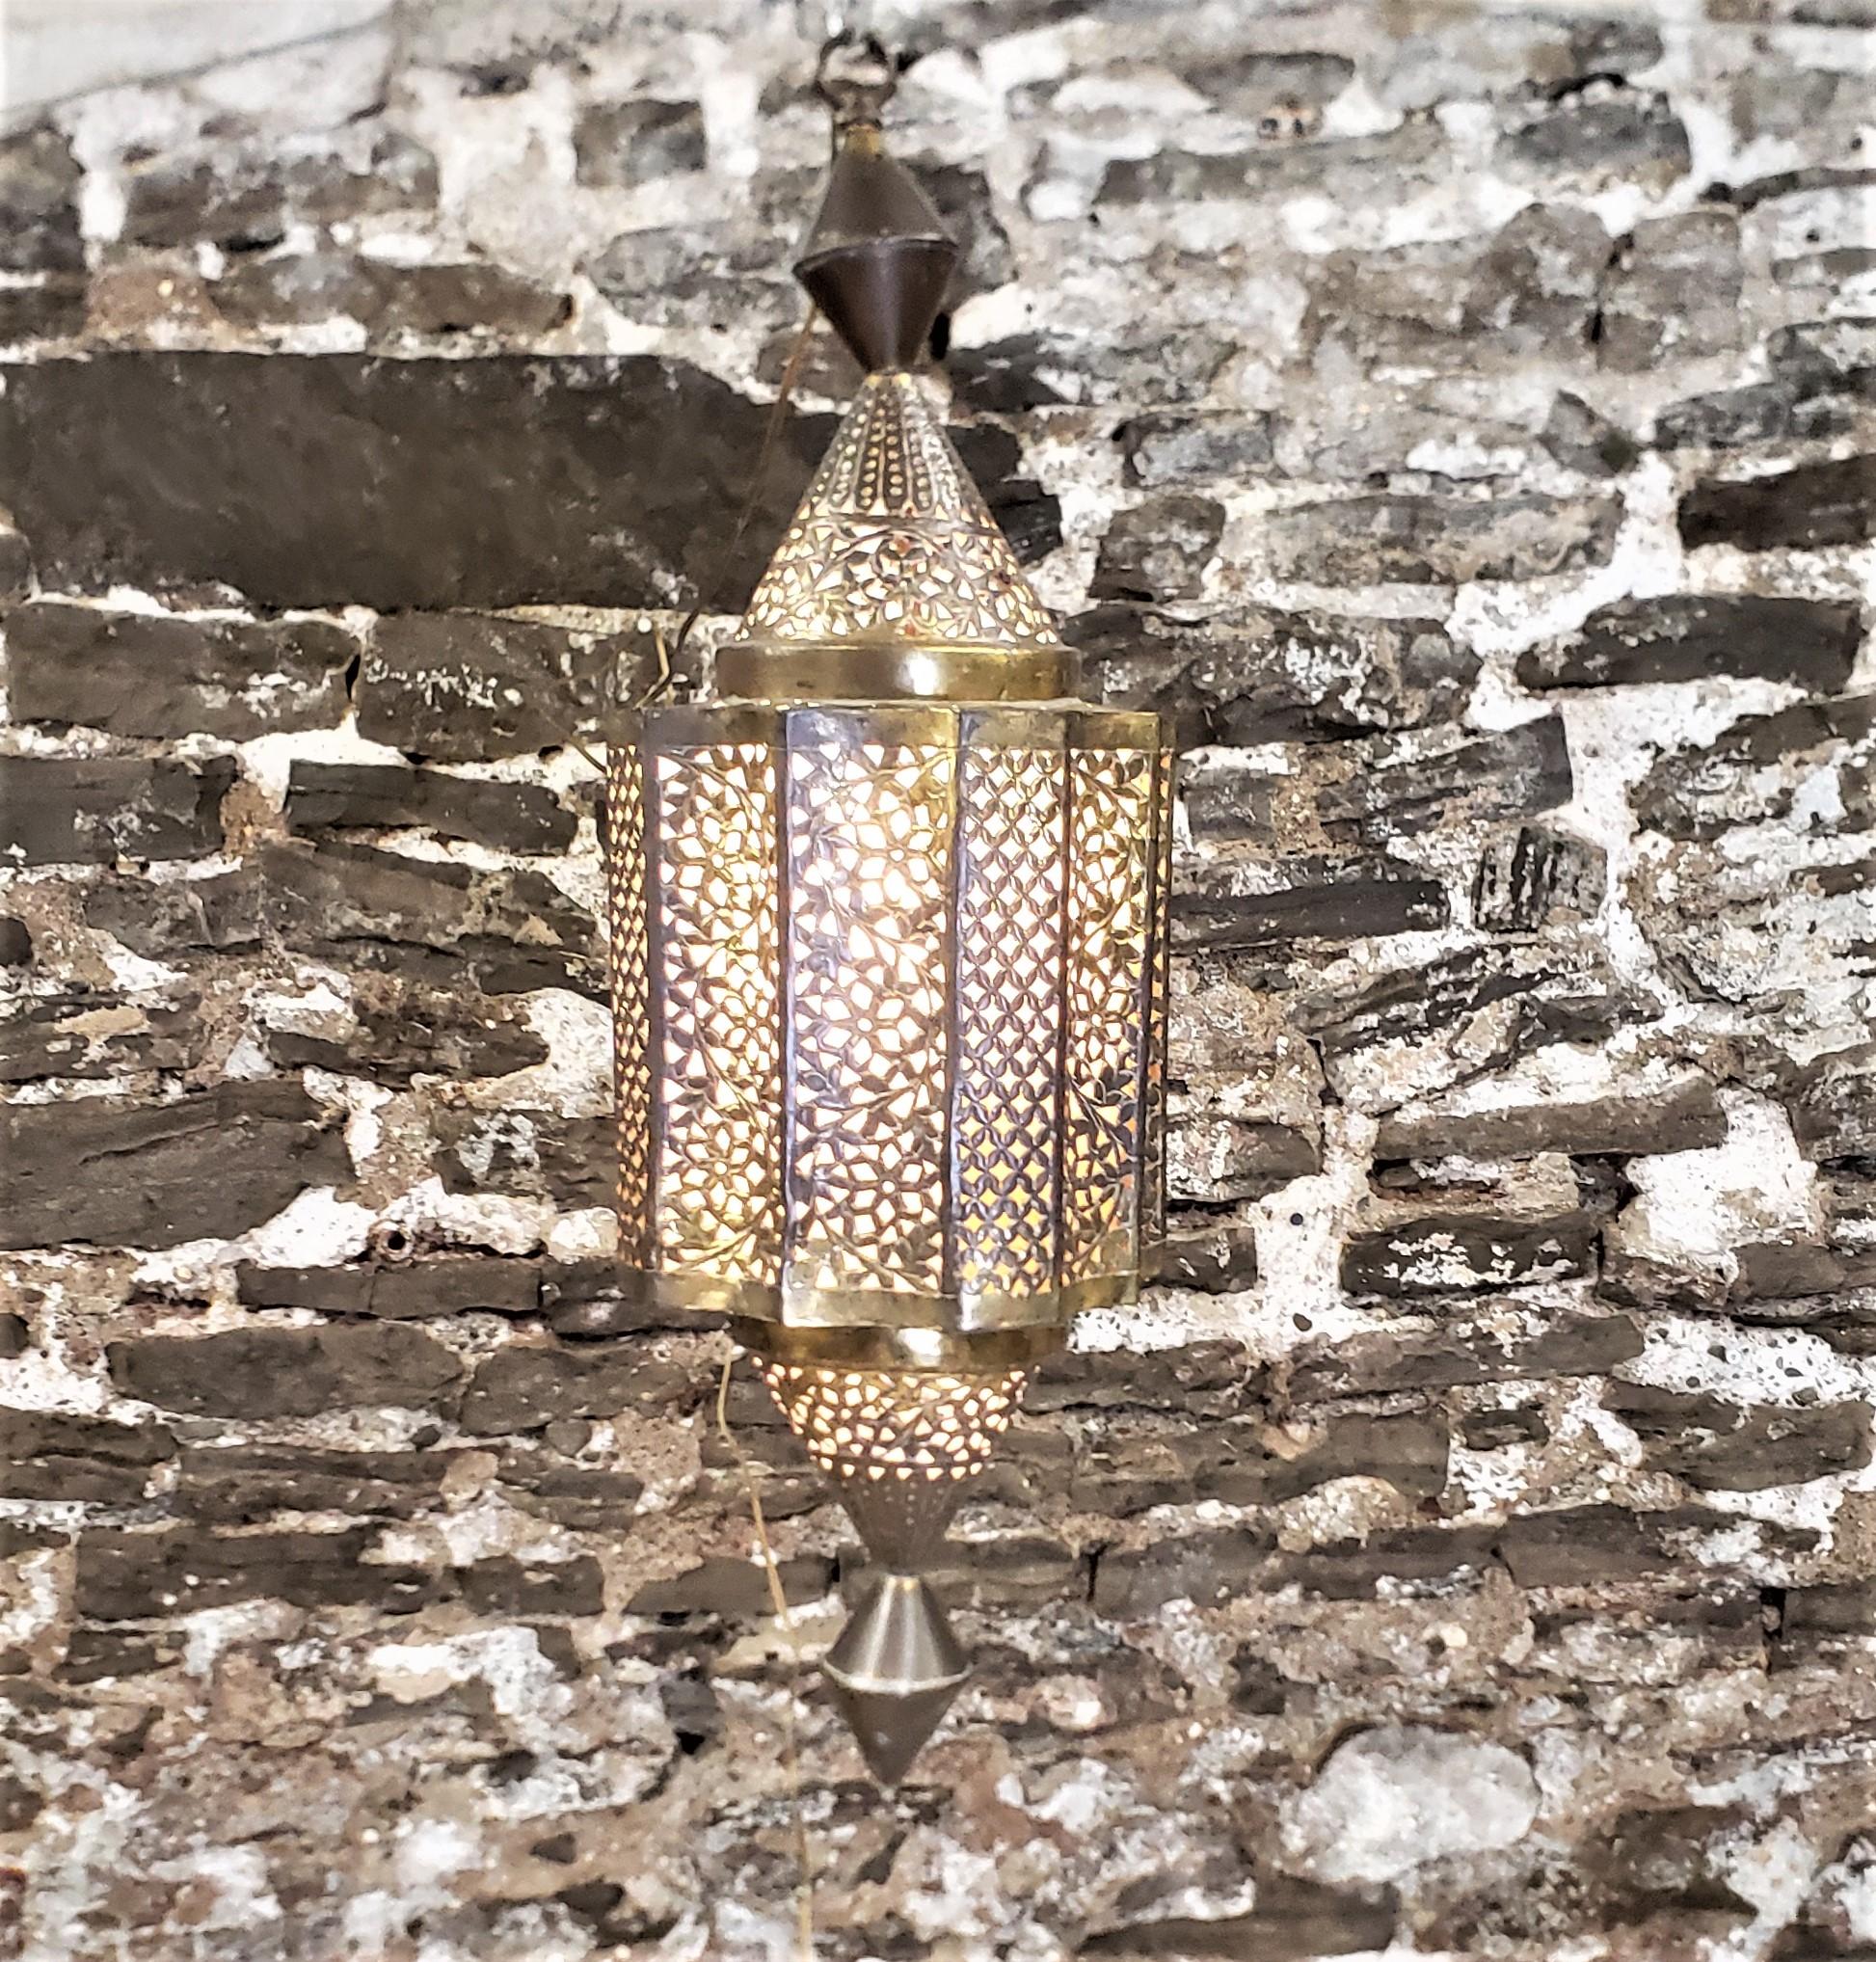 Cette lanterne n'est pas signée, mais elle provient du Maroc et date d'environ 1965. Elle est réalisée dans le style moderne du milieu du siècle. La lanterne est composée de feuilles de laiton qui ont été façonnées et percées de motifs géométriques.